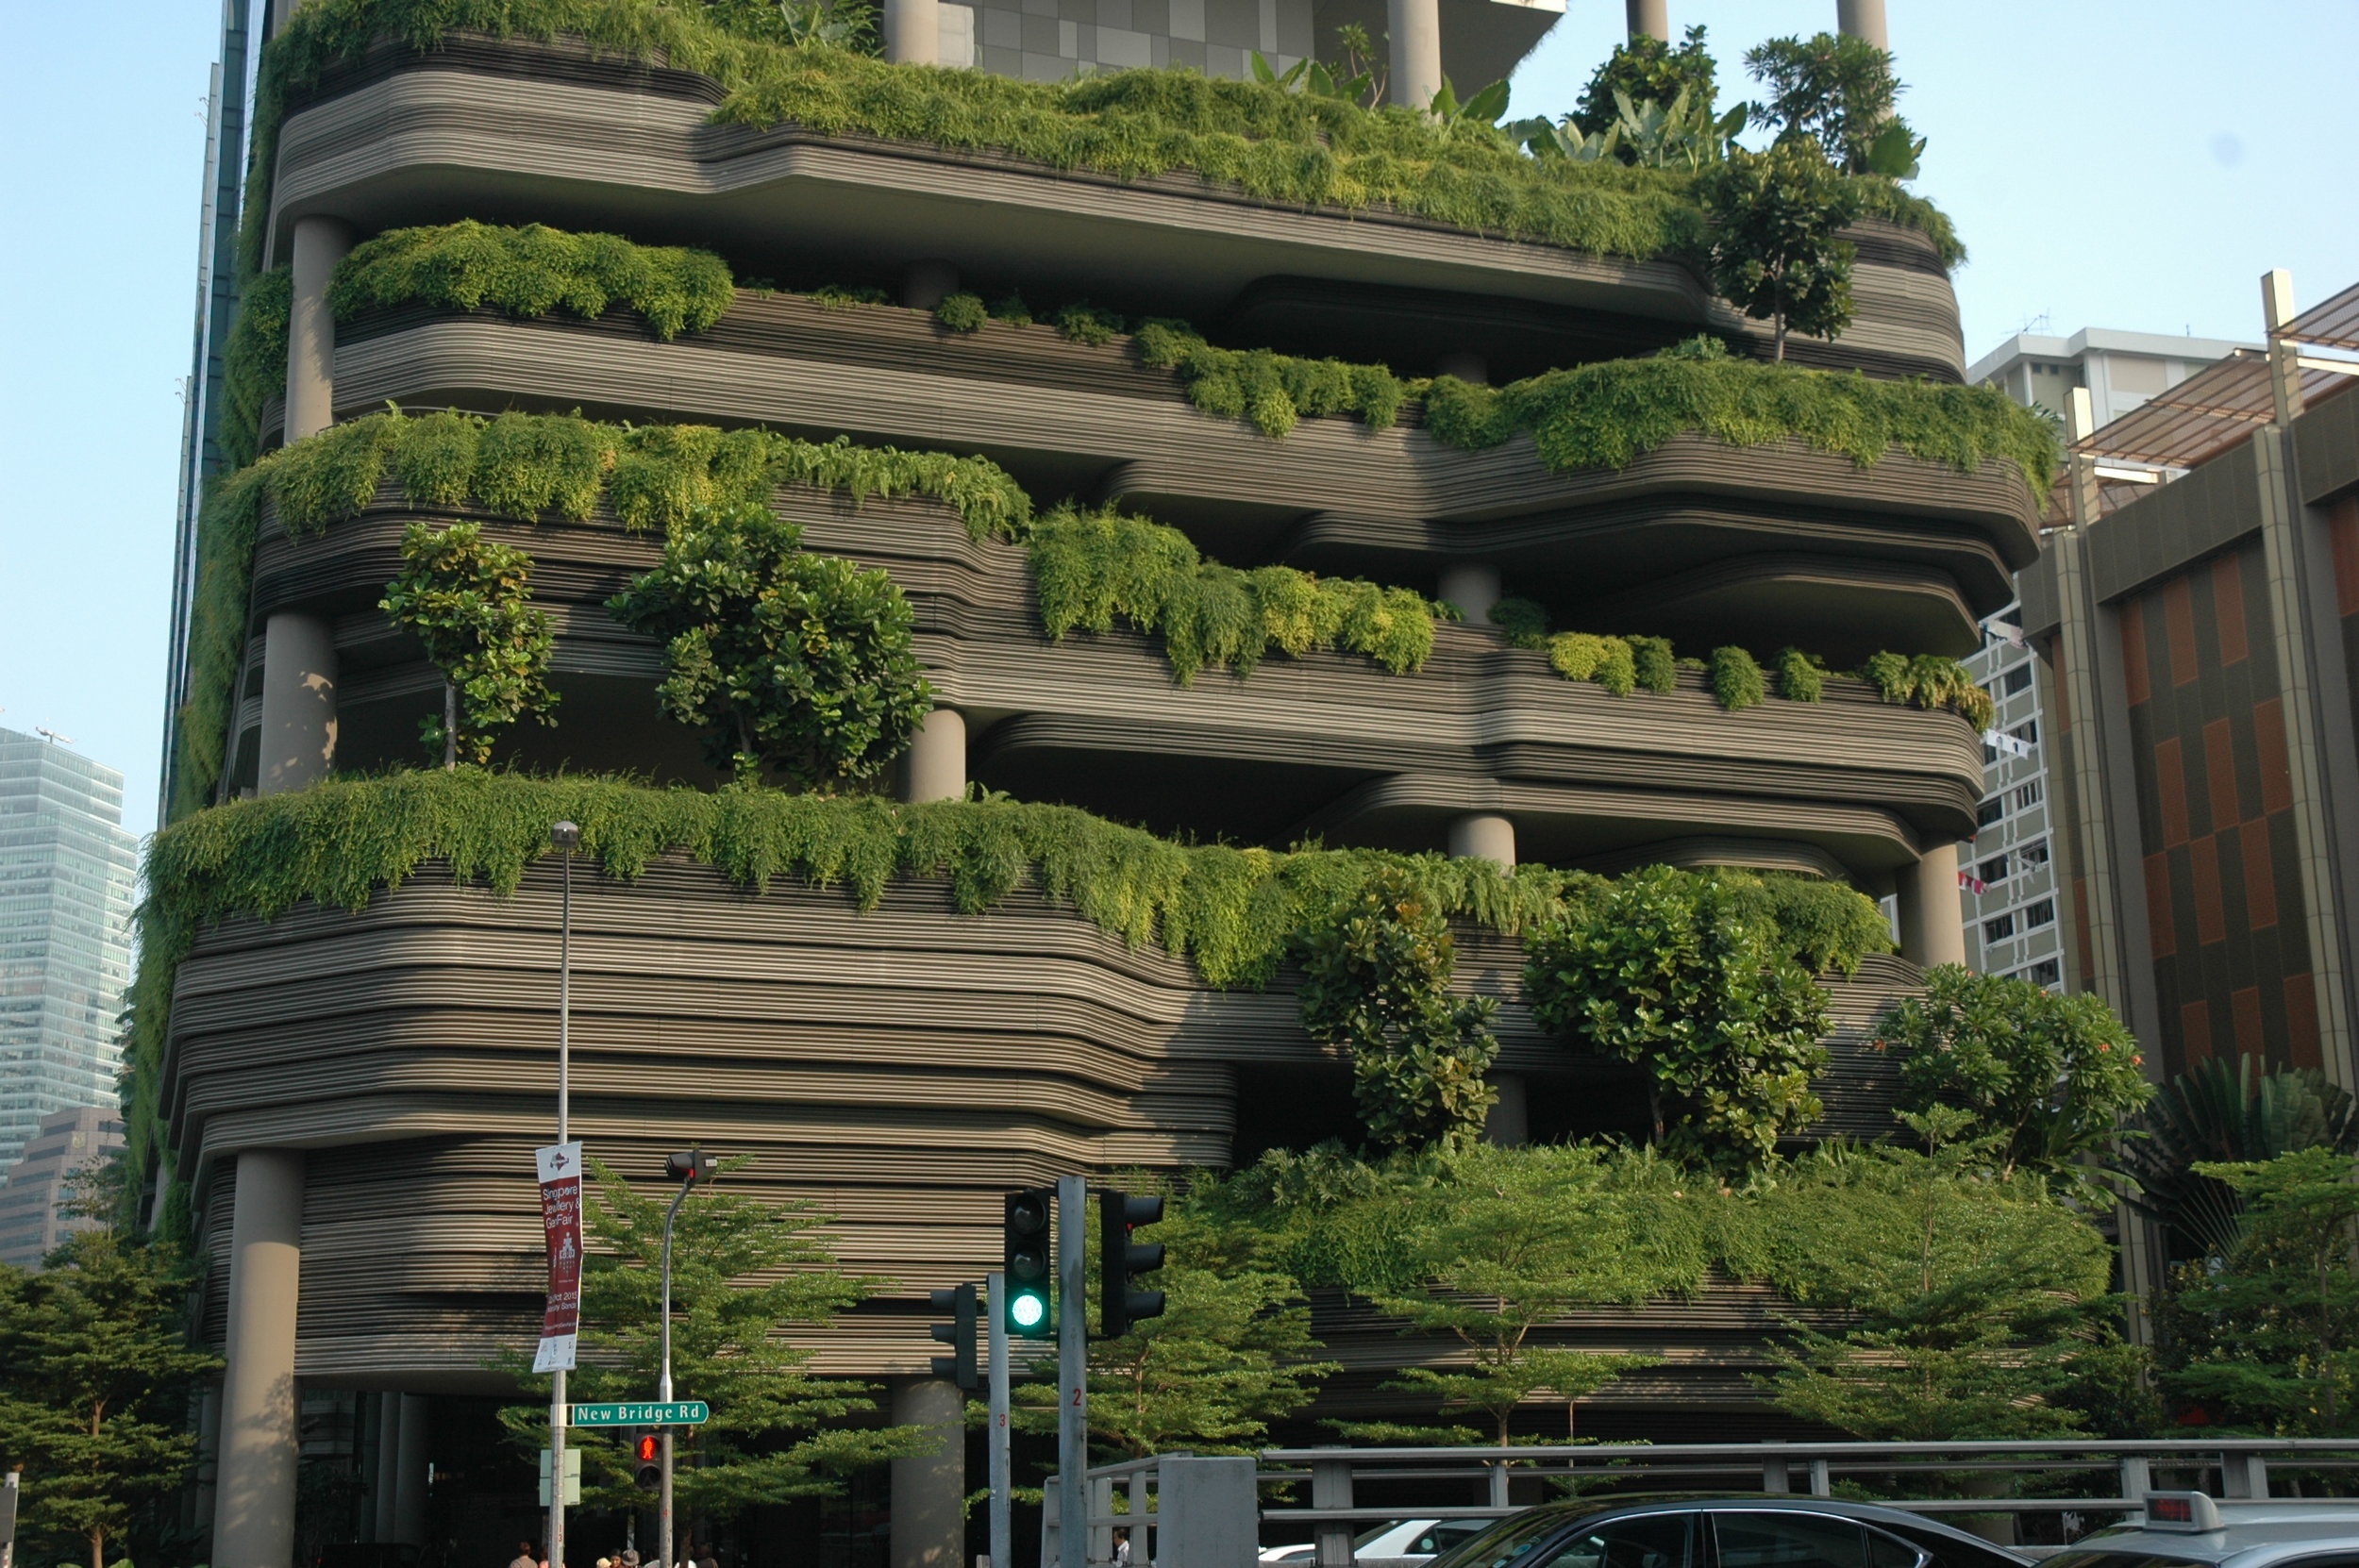 biophilic singapore cities fullsize vision practice